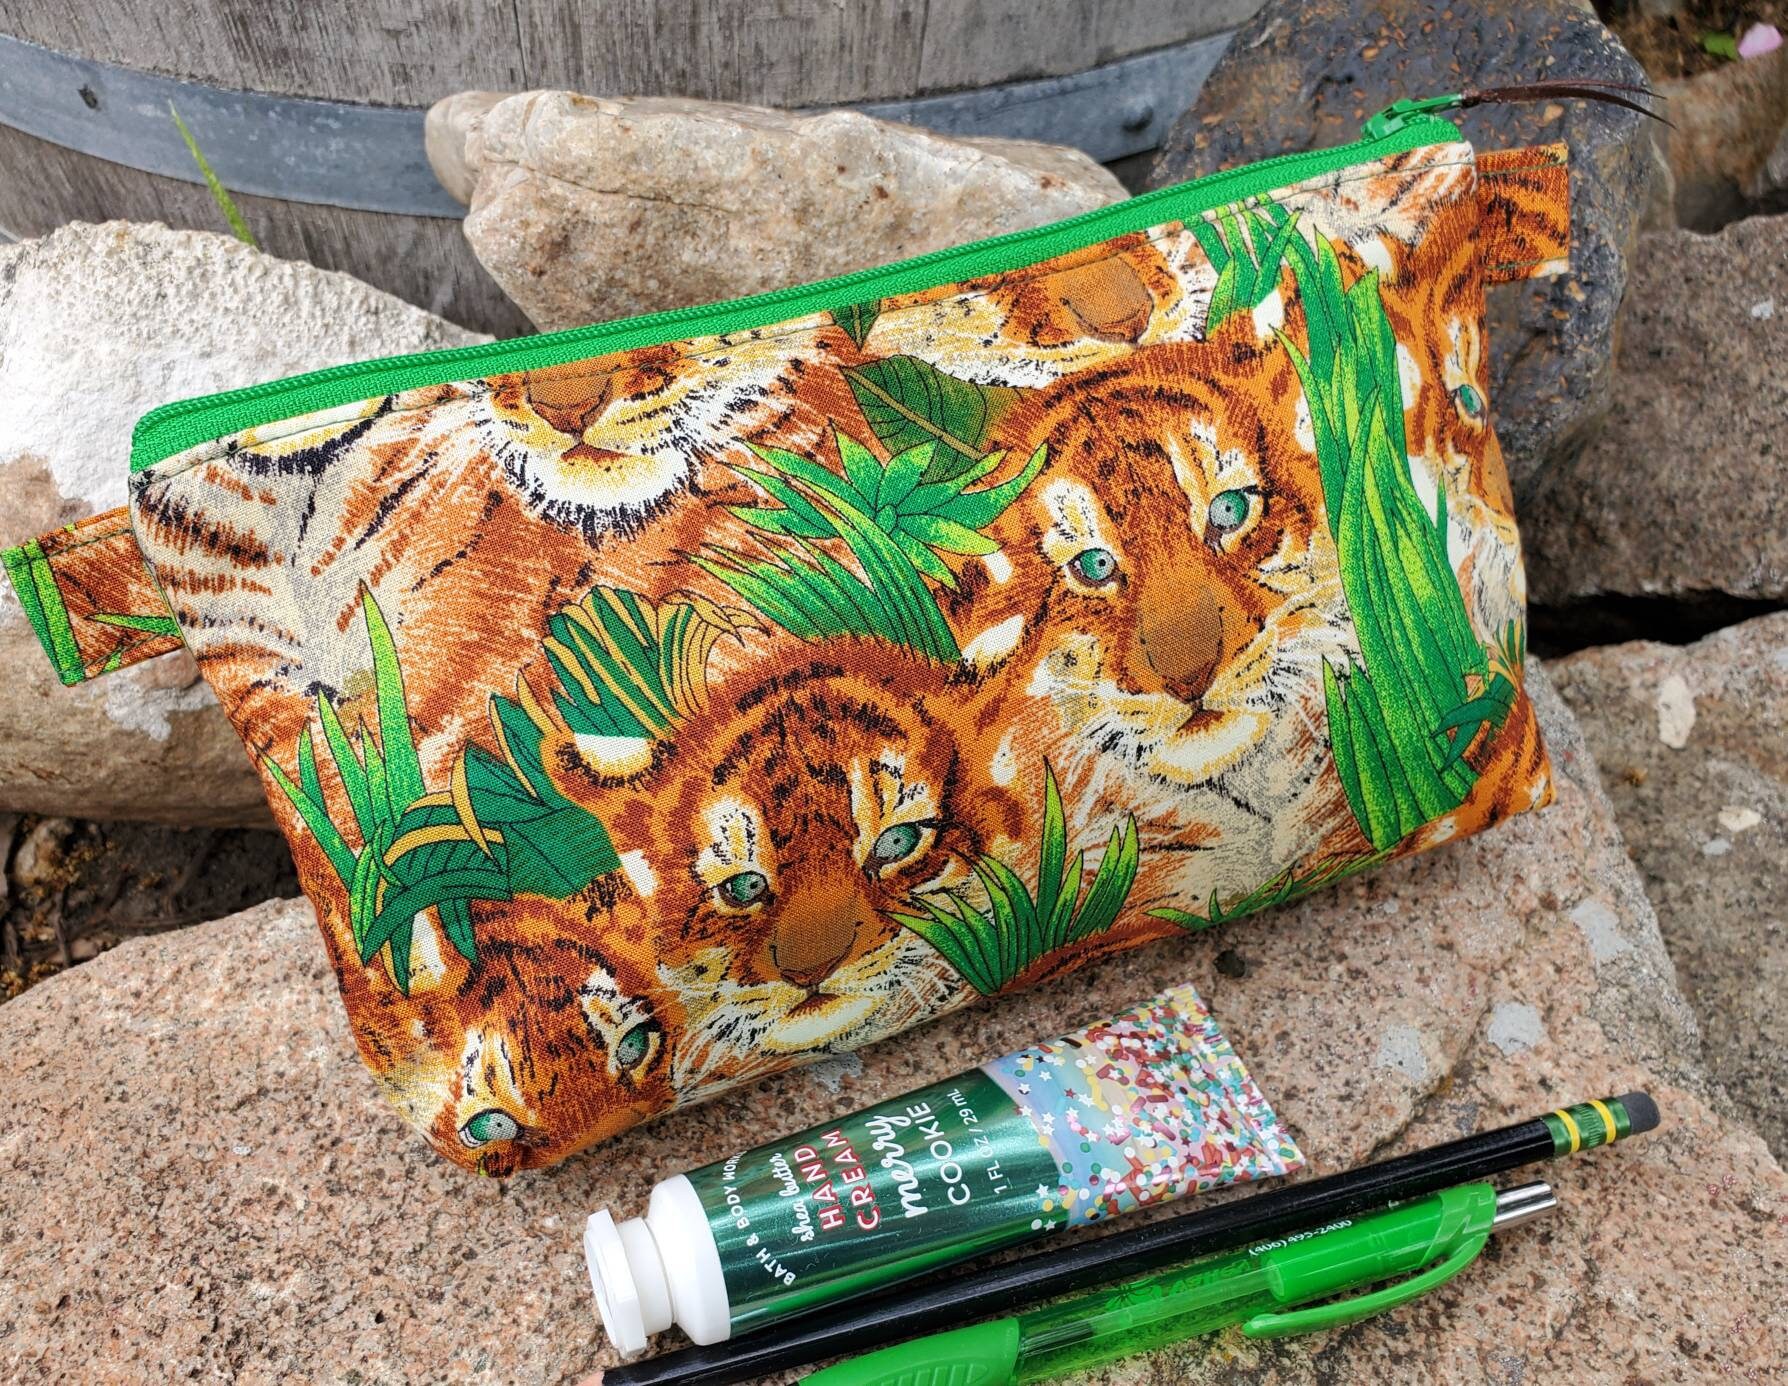 Otis Batterbee Small Tiger Makeup Bag